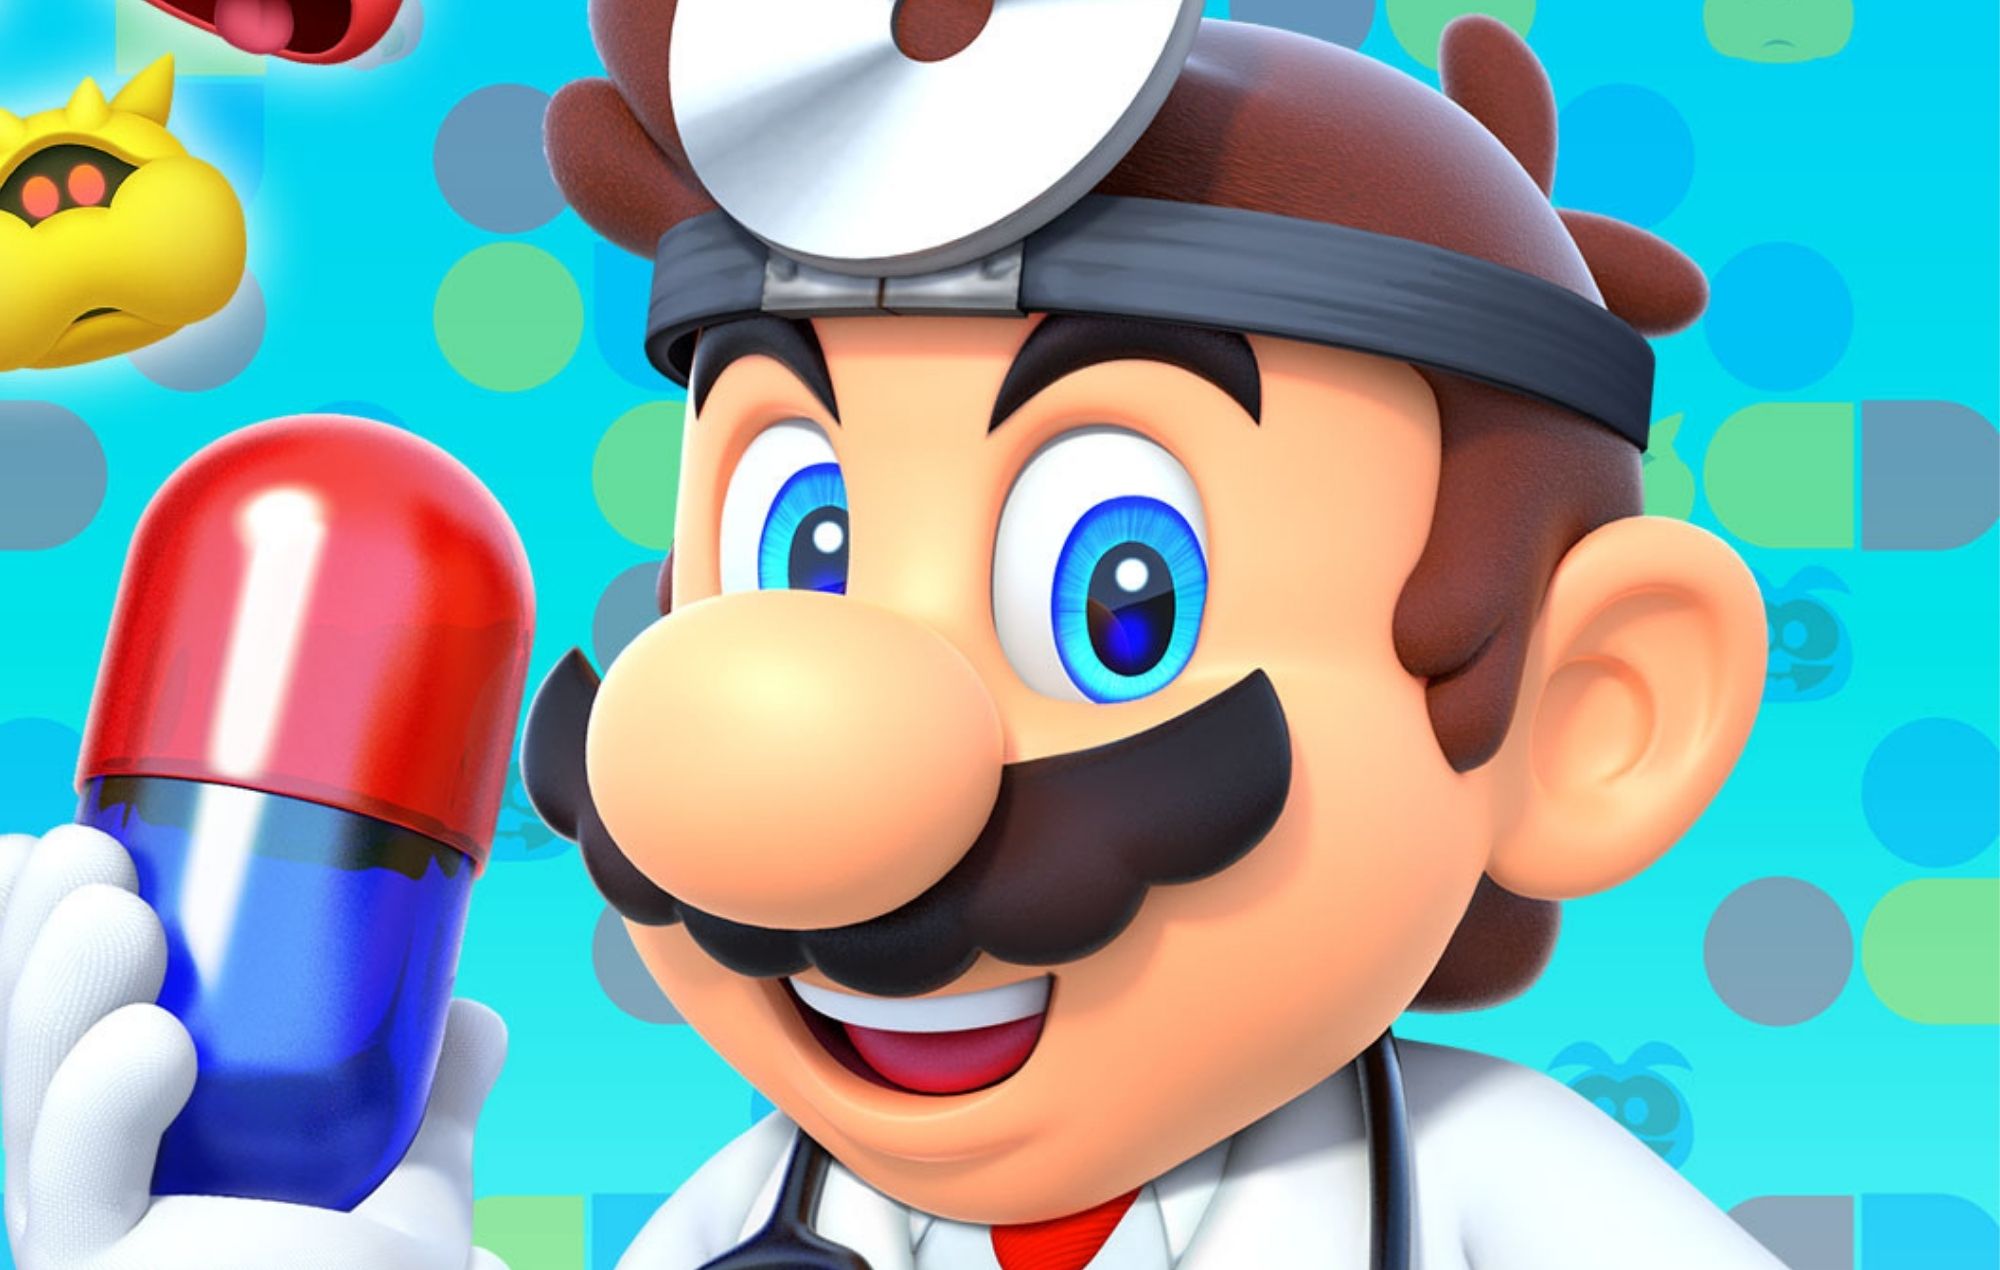 El "Dr. Mario" se convierte en un seguro médico infernal para protestar contra el sistema sanitario estadounidense